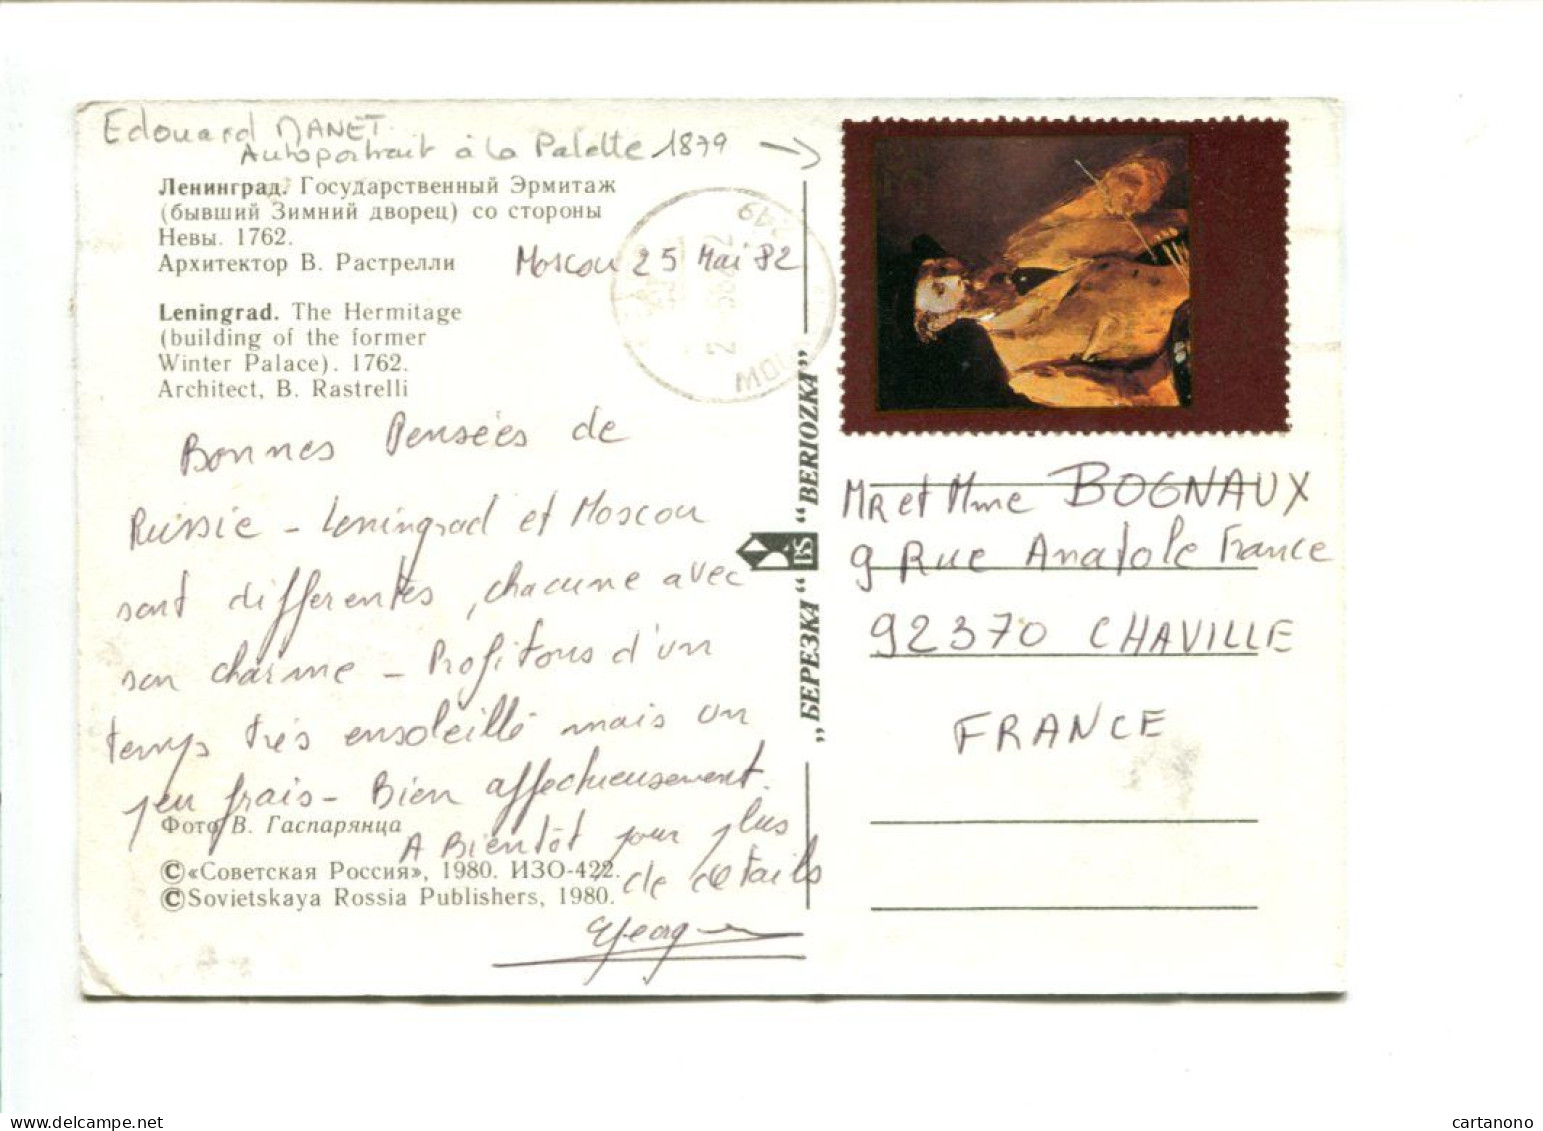 URSS - Affranchissement Sur Carte Postale Du Musée De L'Hermitage - Autoportrait D'Edouard MANET - Impressionisme